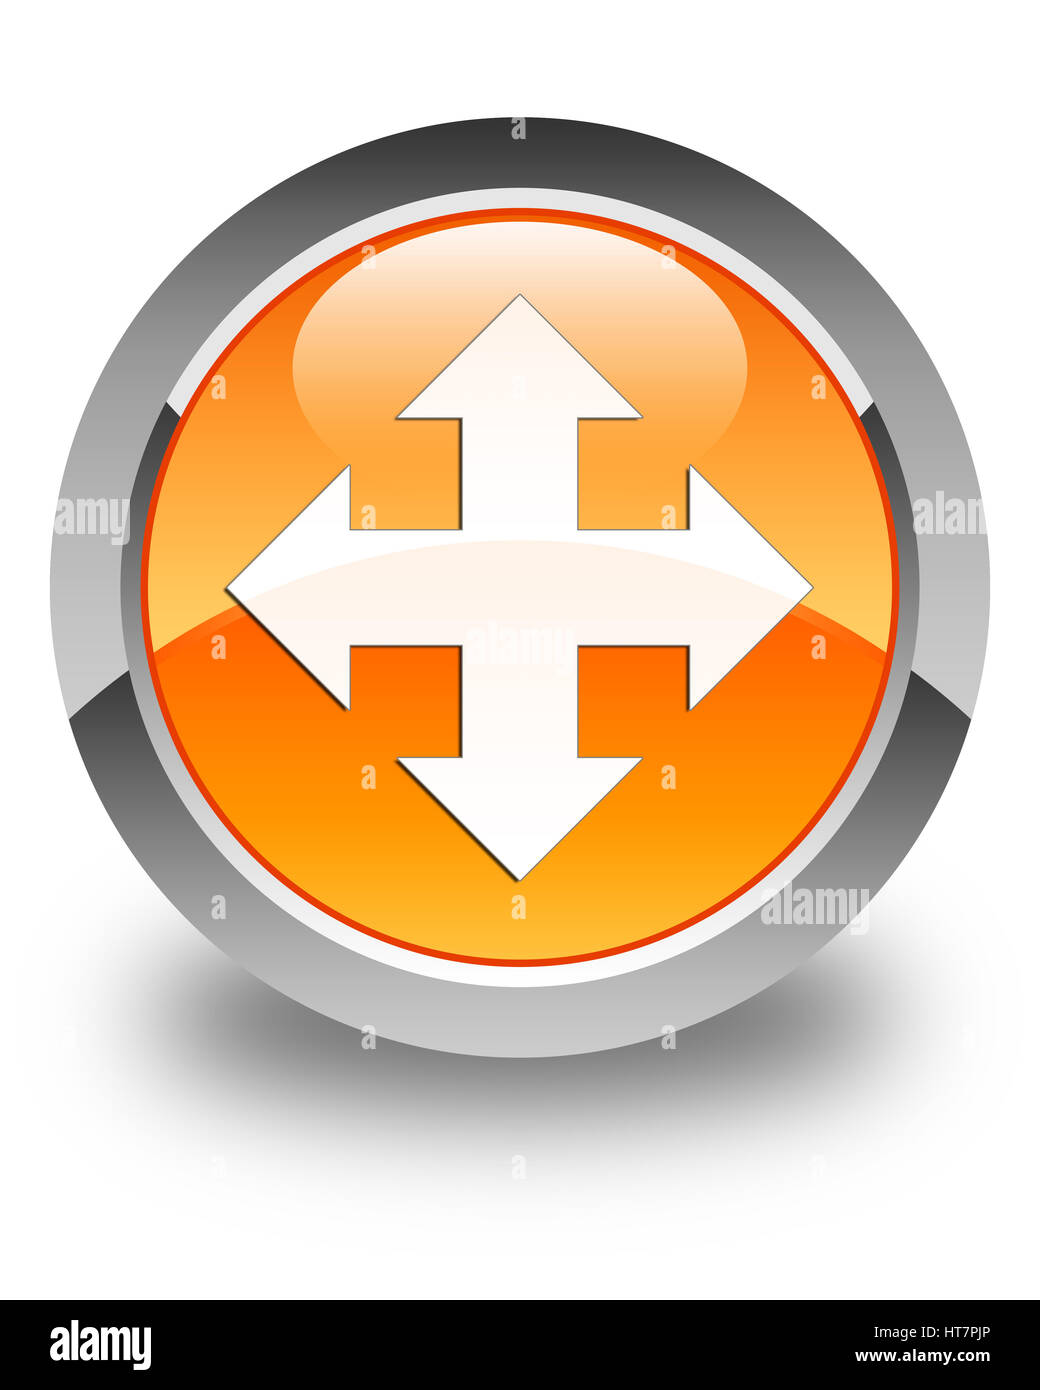 L'icône Déplacer isolé sur bouton rond orange brillant abstract illustration Banque D'Images